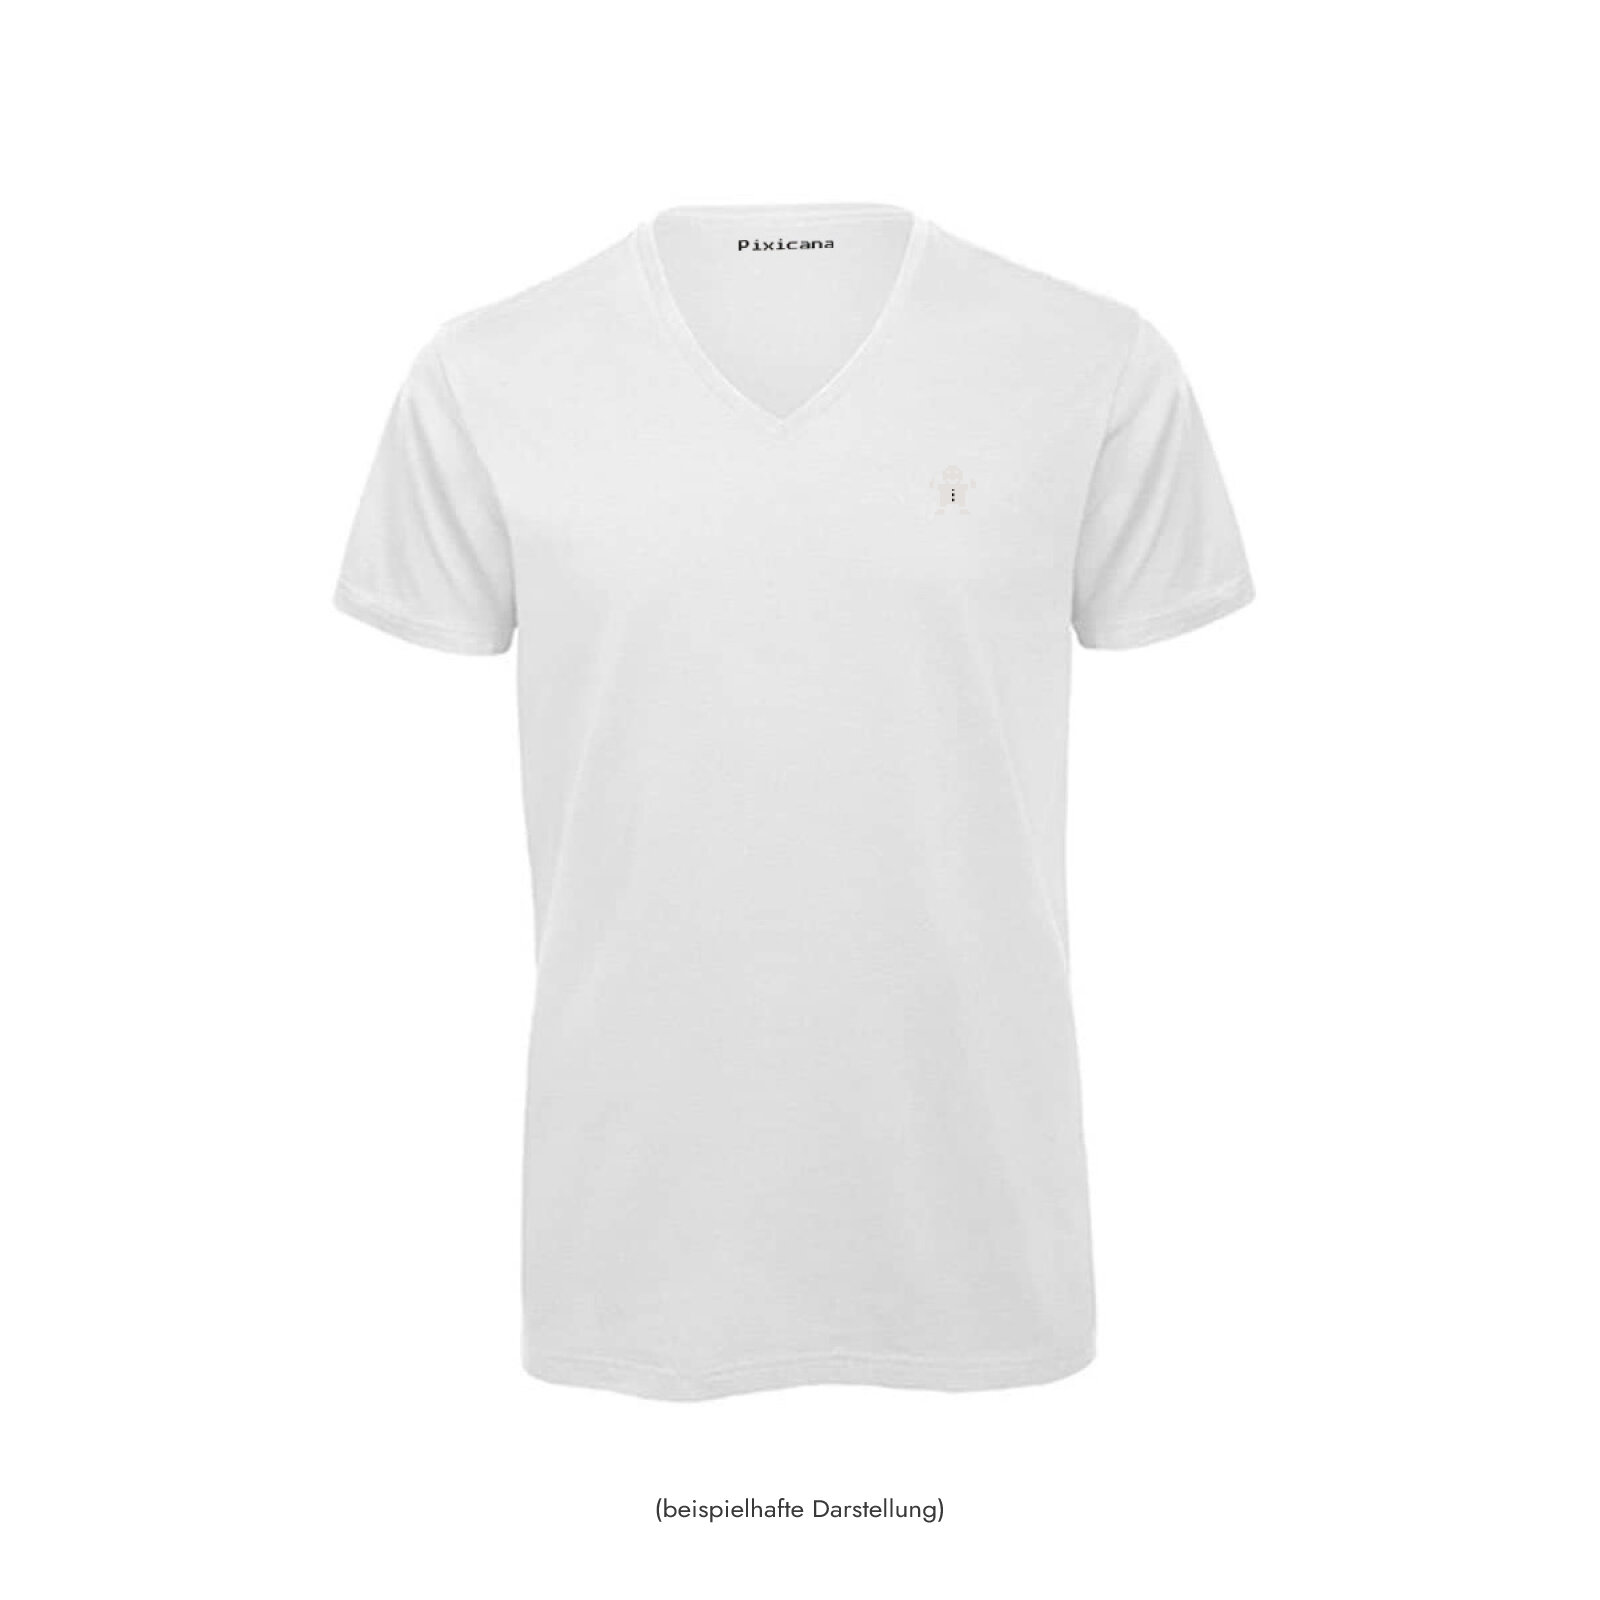 Motive: [Motiv: Classic Lebkuchen] Männer | T-Shirt, V-Ausschnitt, weiß, XL